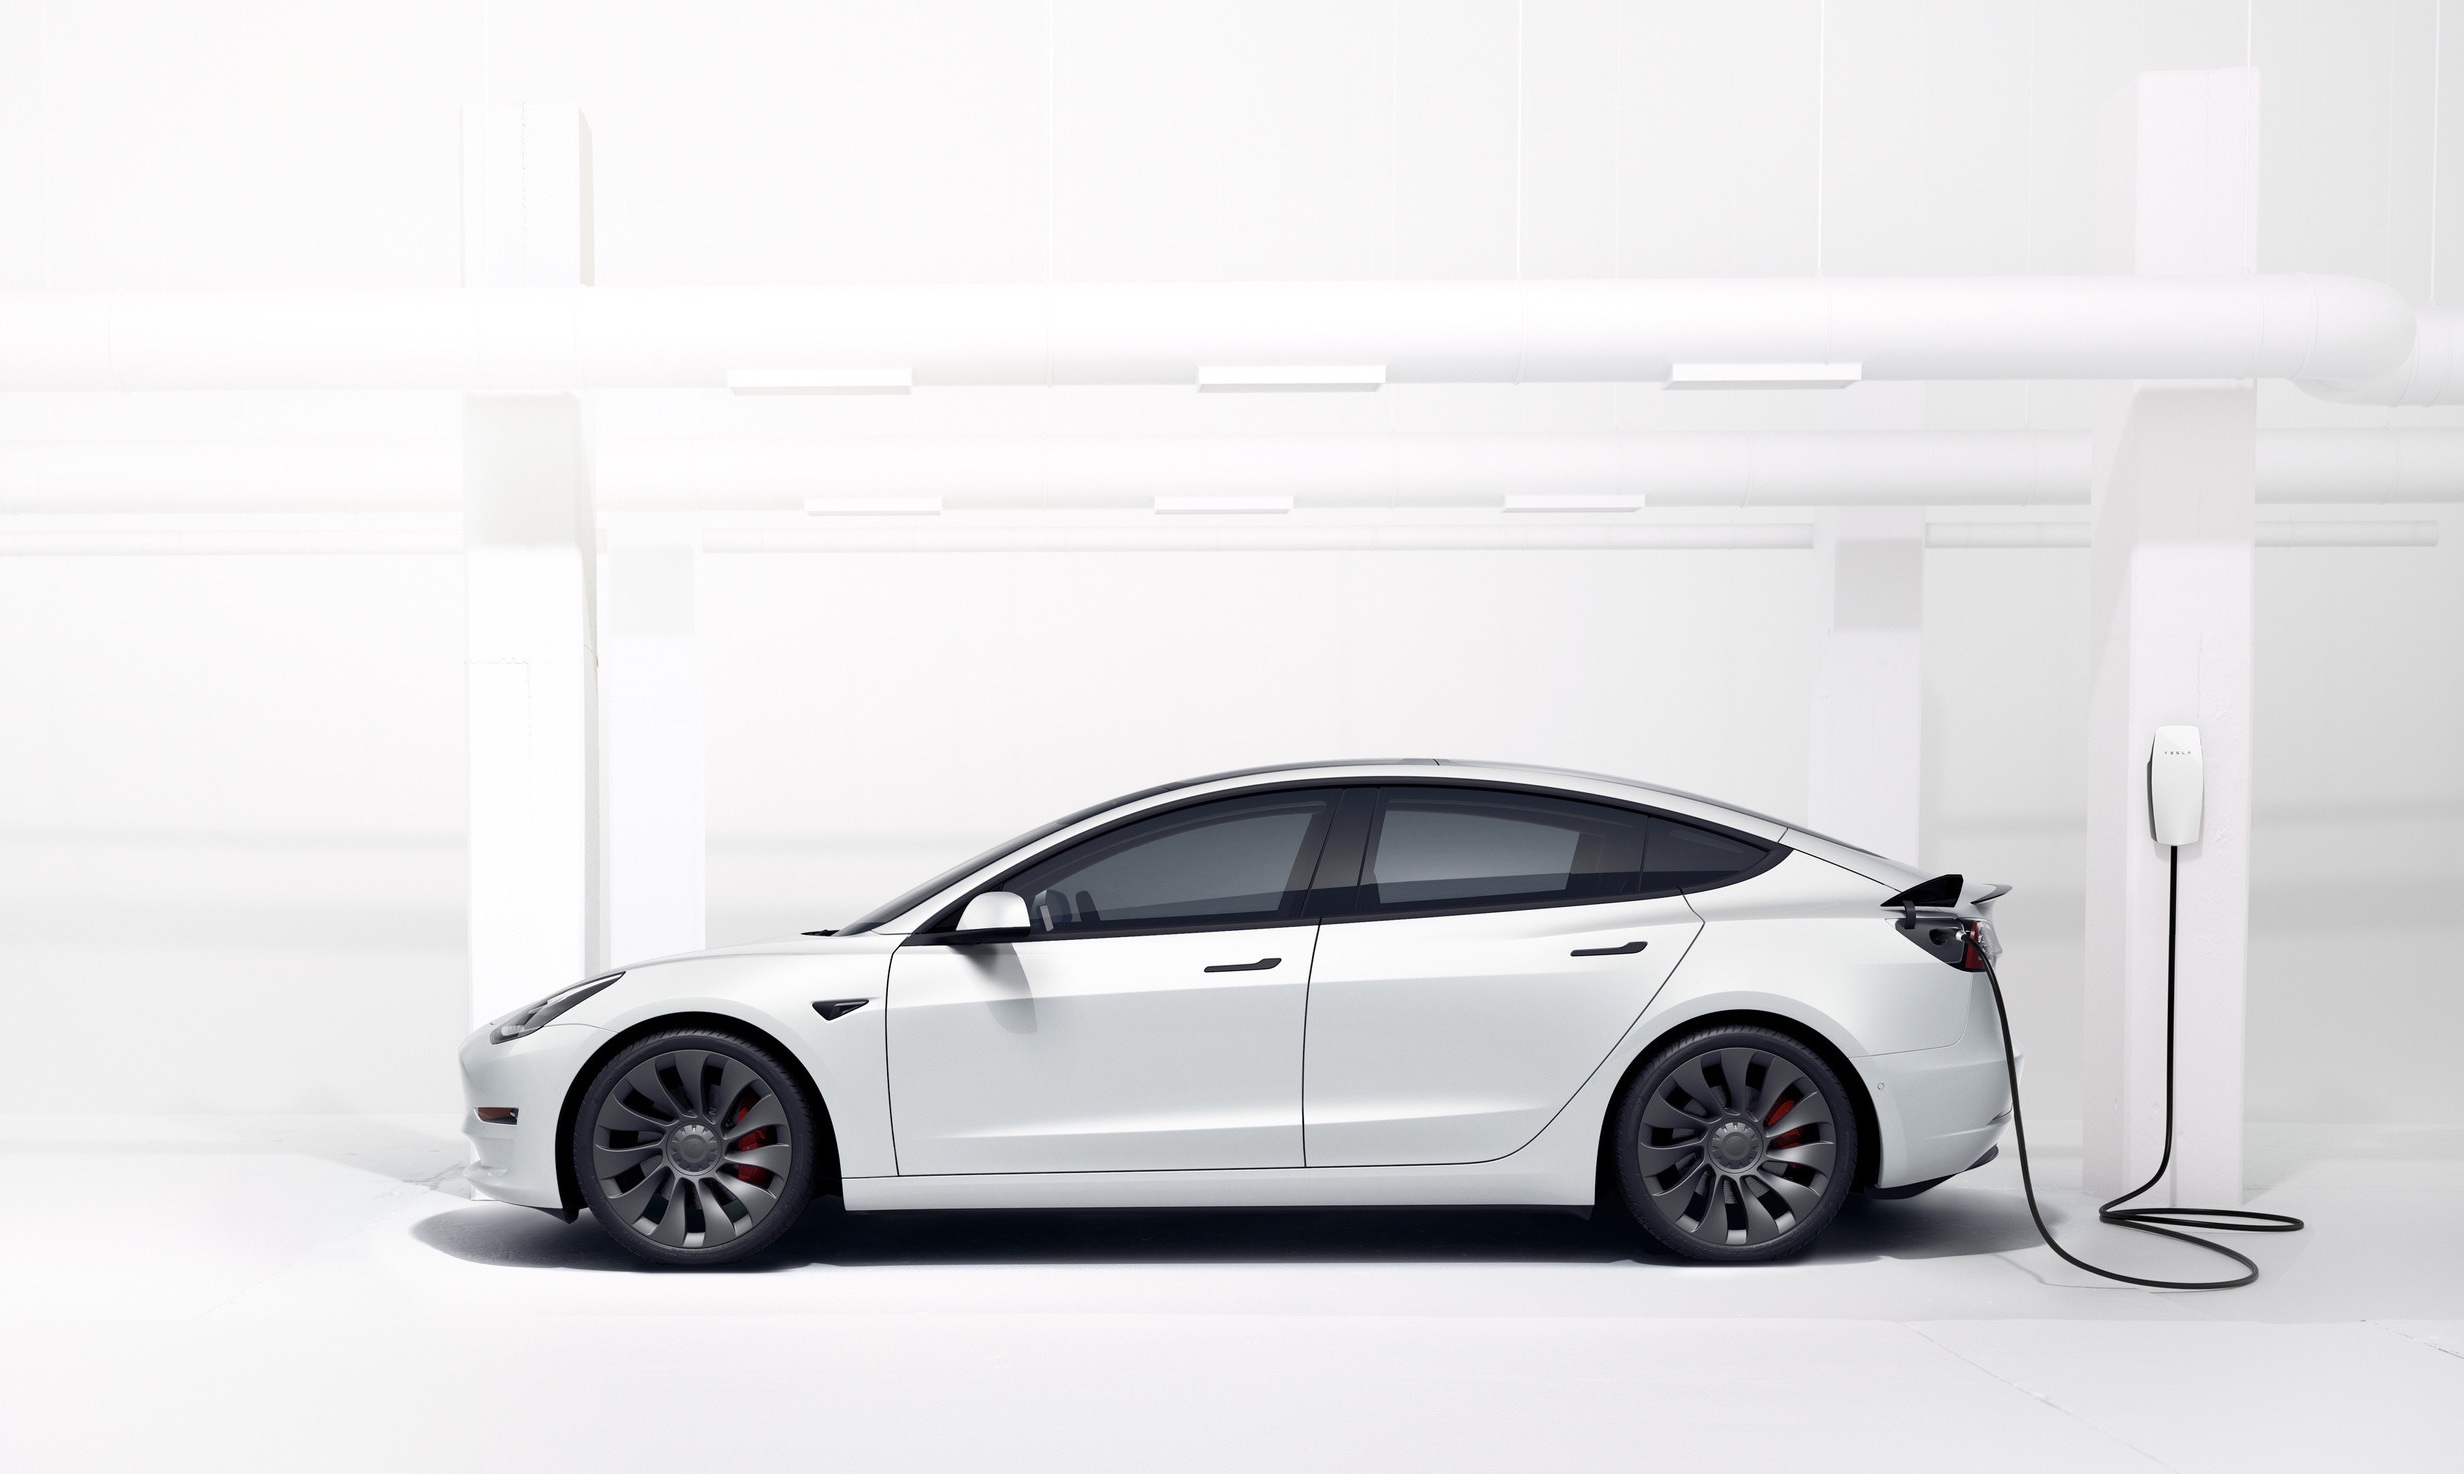 Tesla Model 3 sill the top-selling EV in Australia